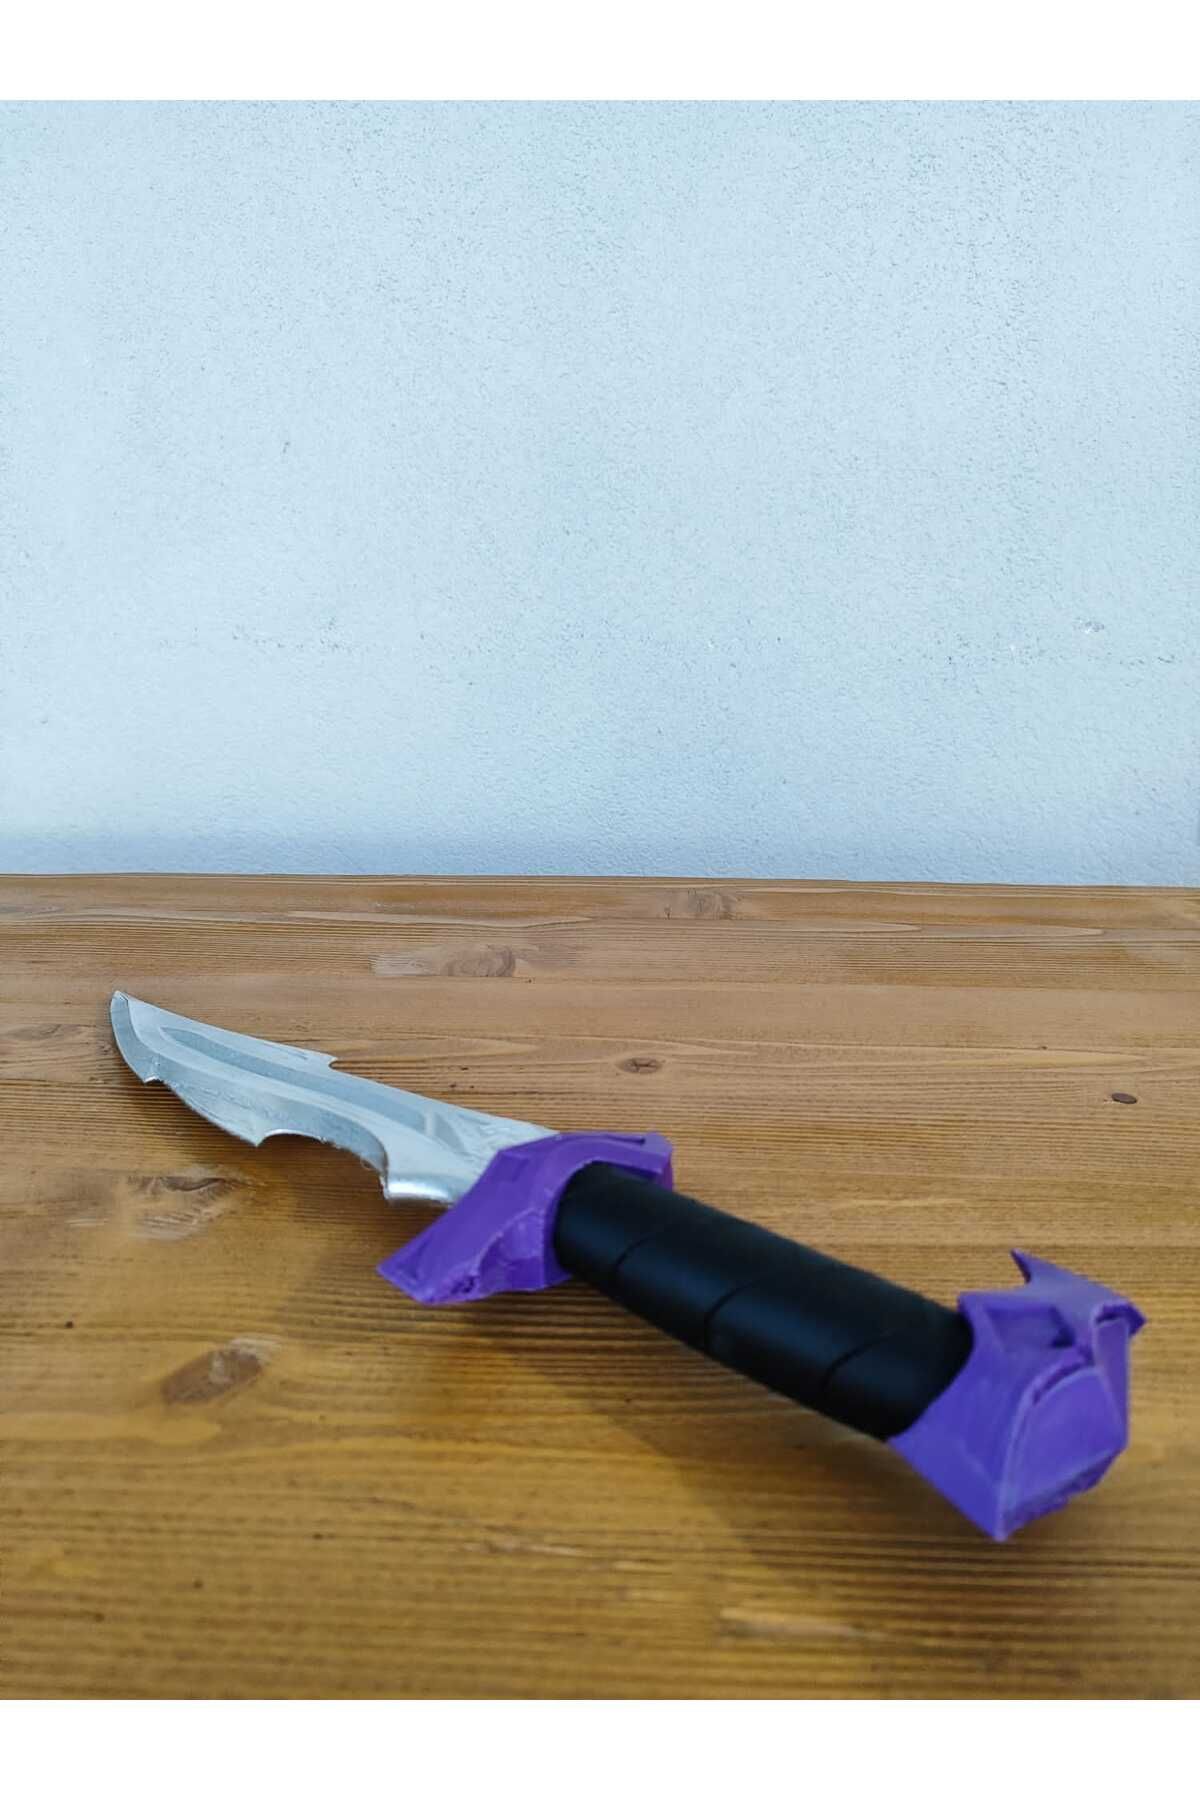 BAY3DANKARA Reaver Knife Yağmacı Bıçak Figürü